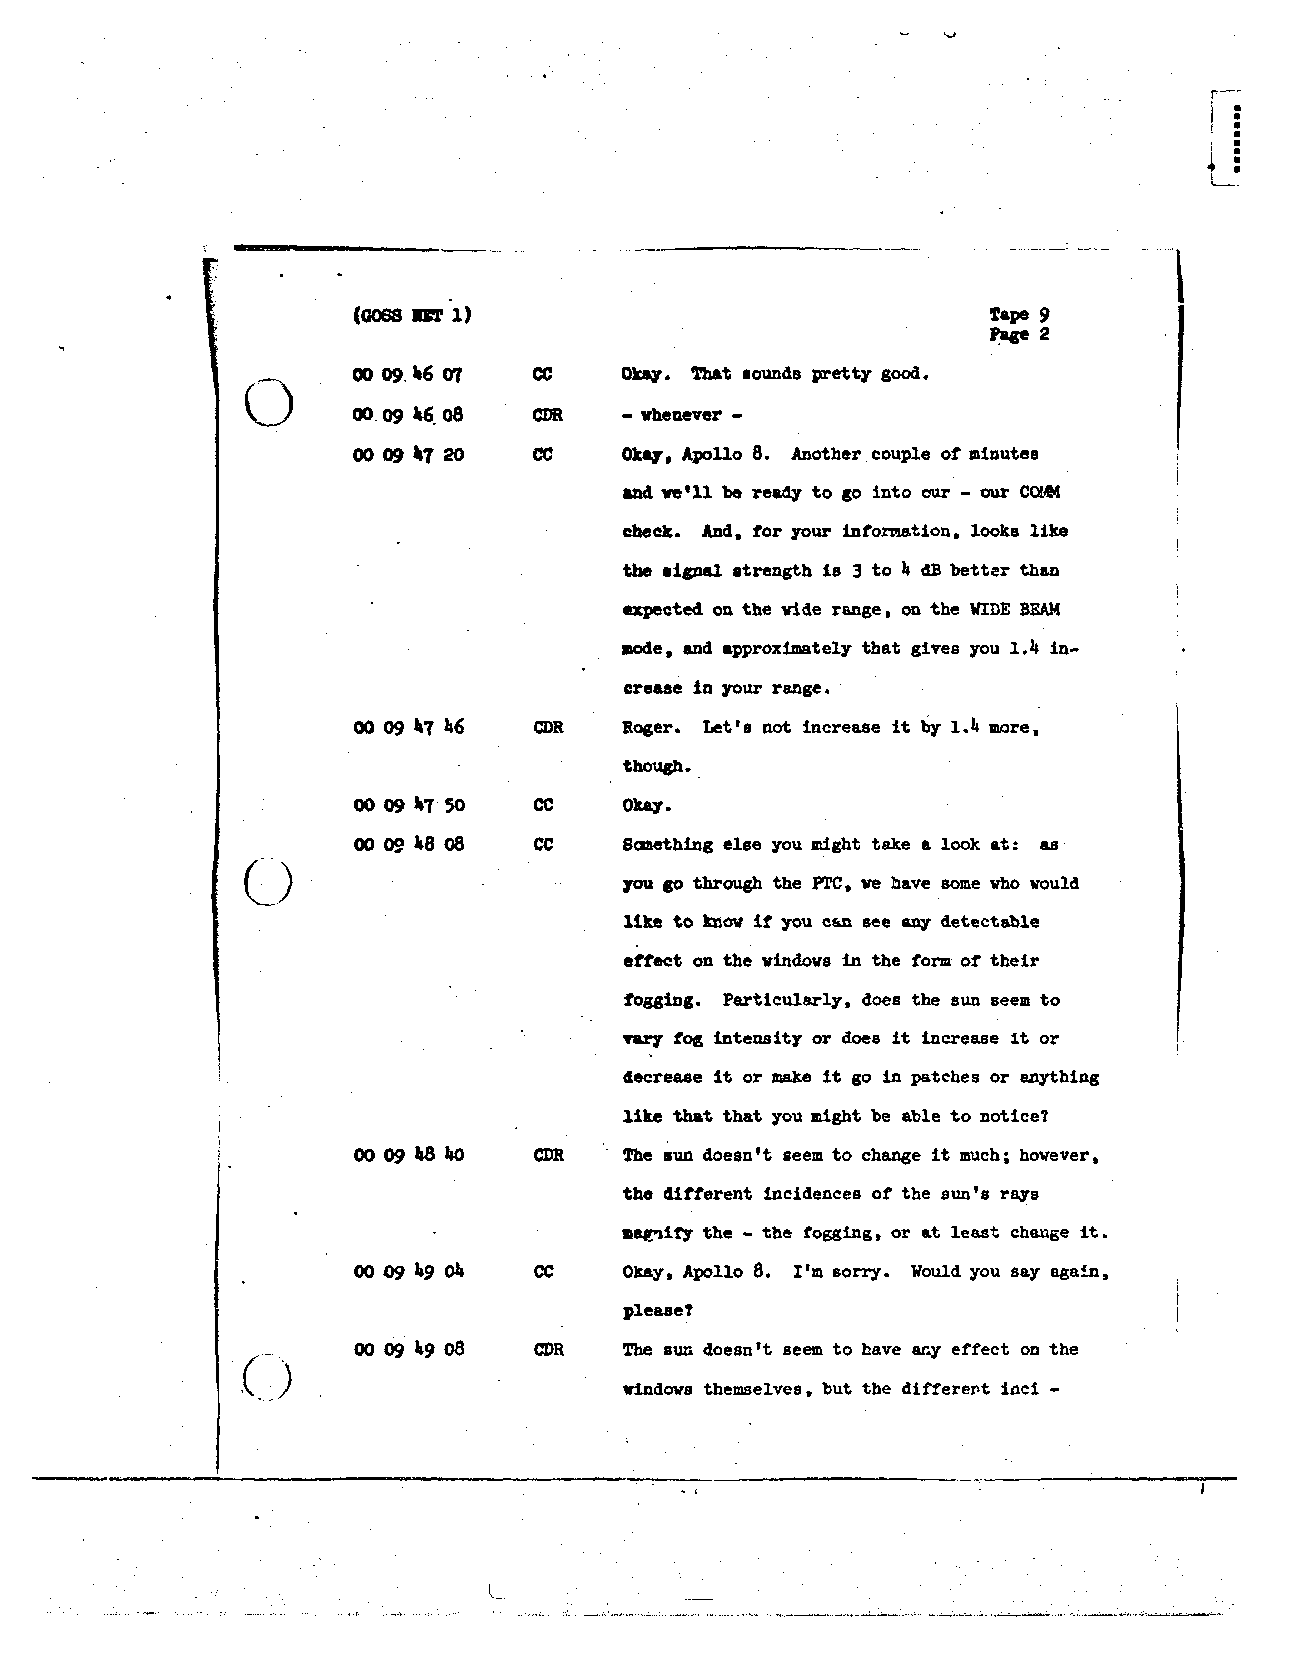 Page 81 of Apollo 8’s original transcript